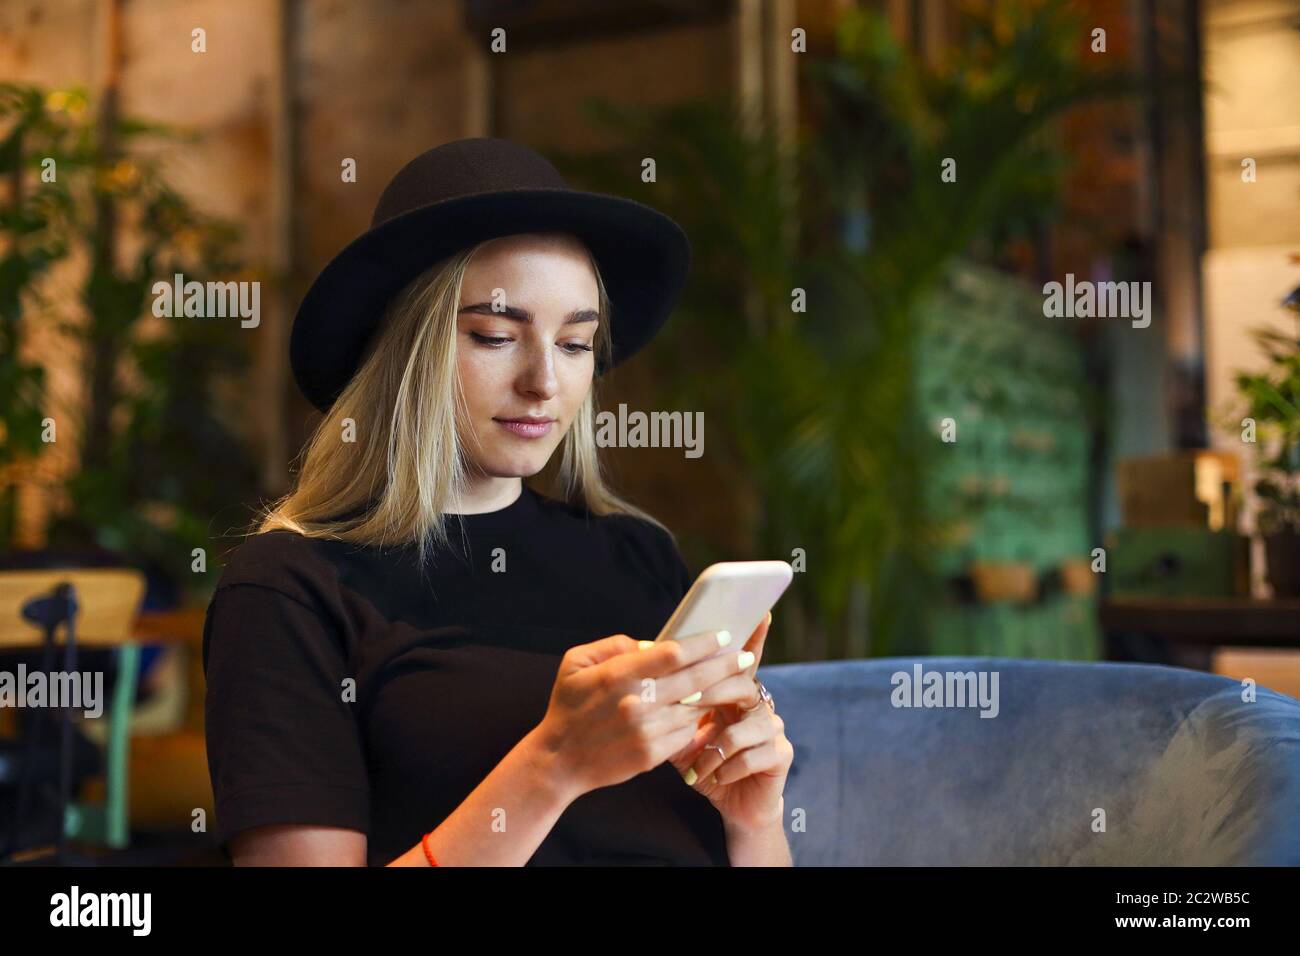 Blonde Mädchen in weißen Jeansrock, Bluse und schwarzen Hut, sitzen am Café-Tisch allein am Fenster, Blick auf das Handy Stockfoto